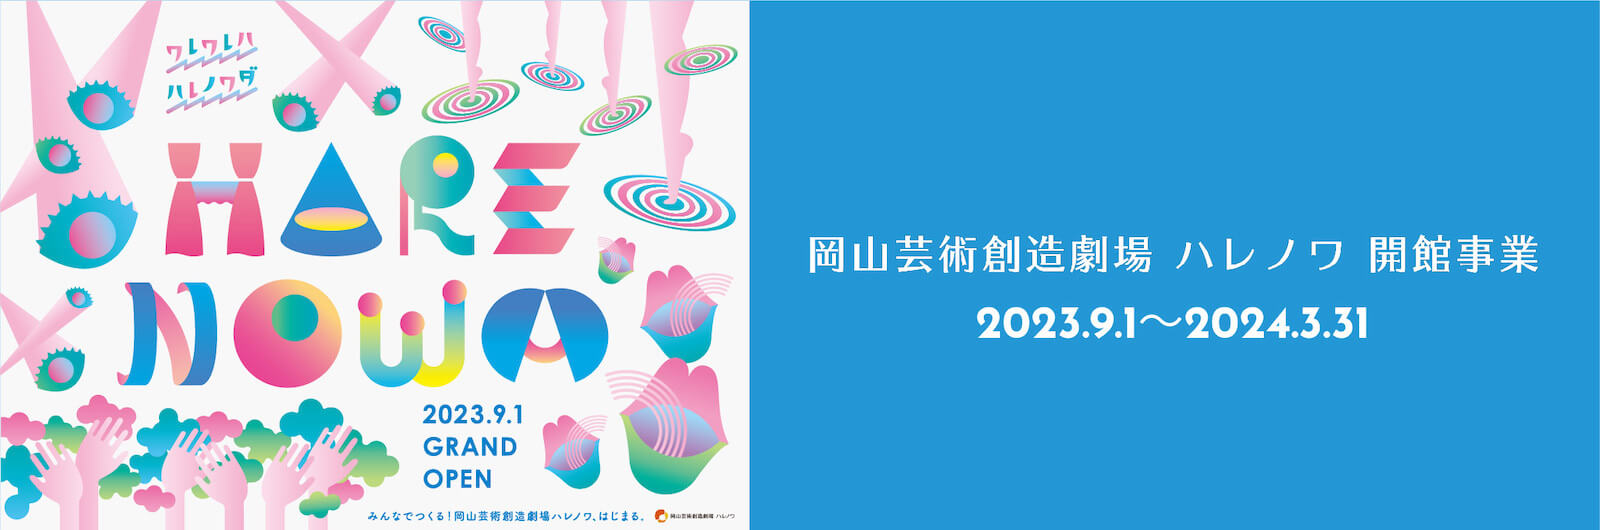 熊川哲也 K-BALLET TOKYO Winter Tour 2023『くるみ割り人形』